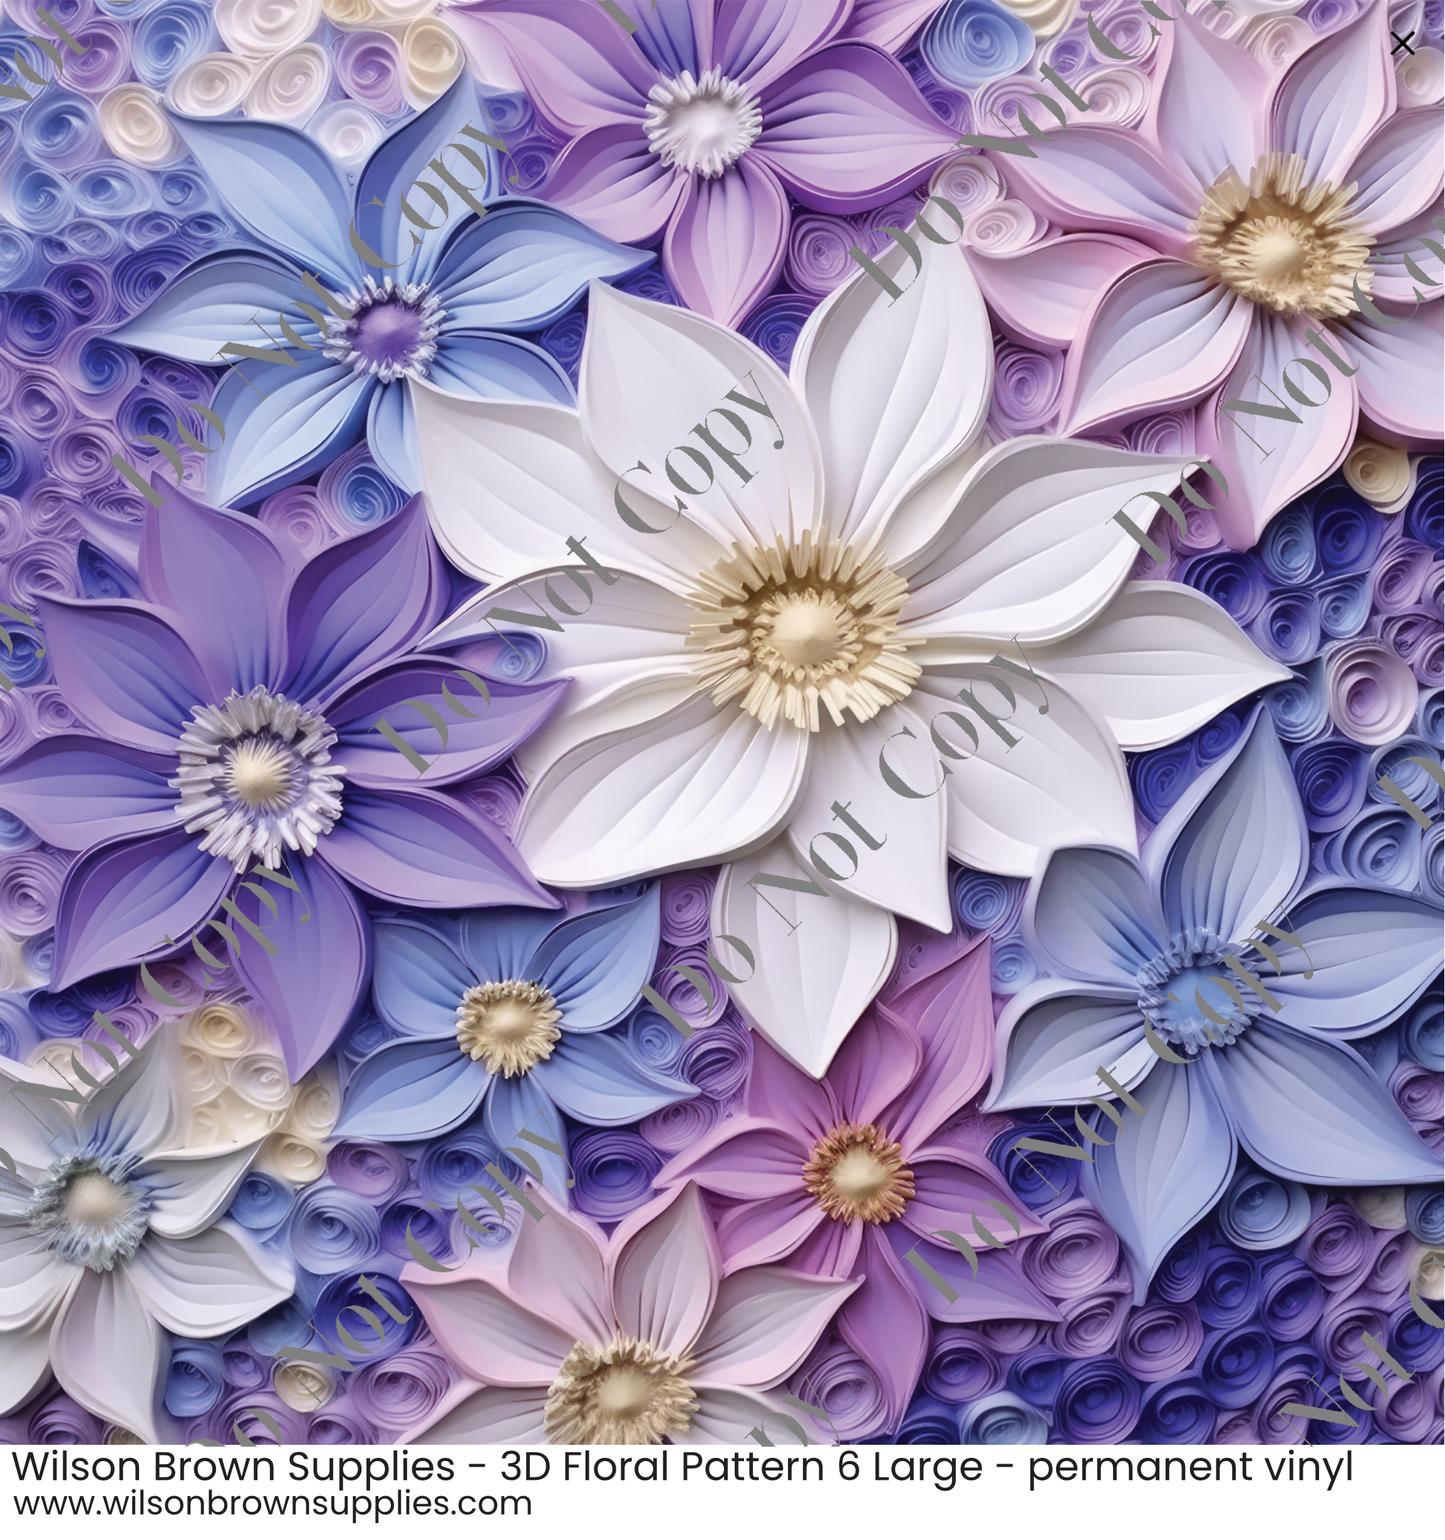 Patterned Vinyl - 3D Floral Pattern 6